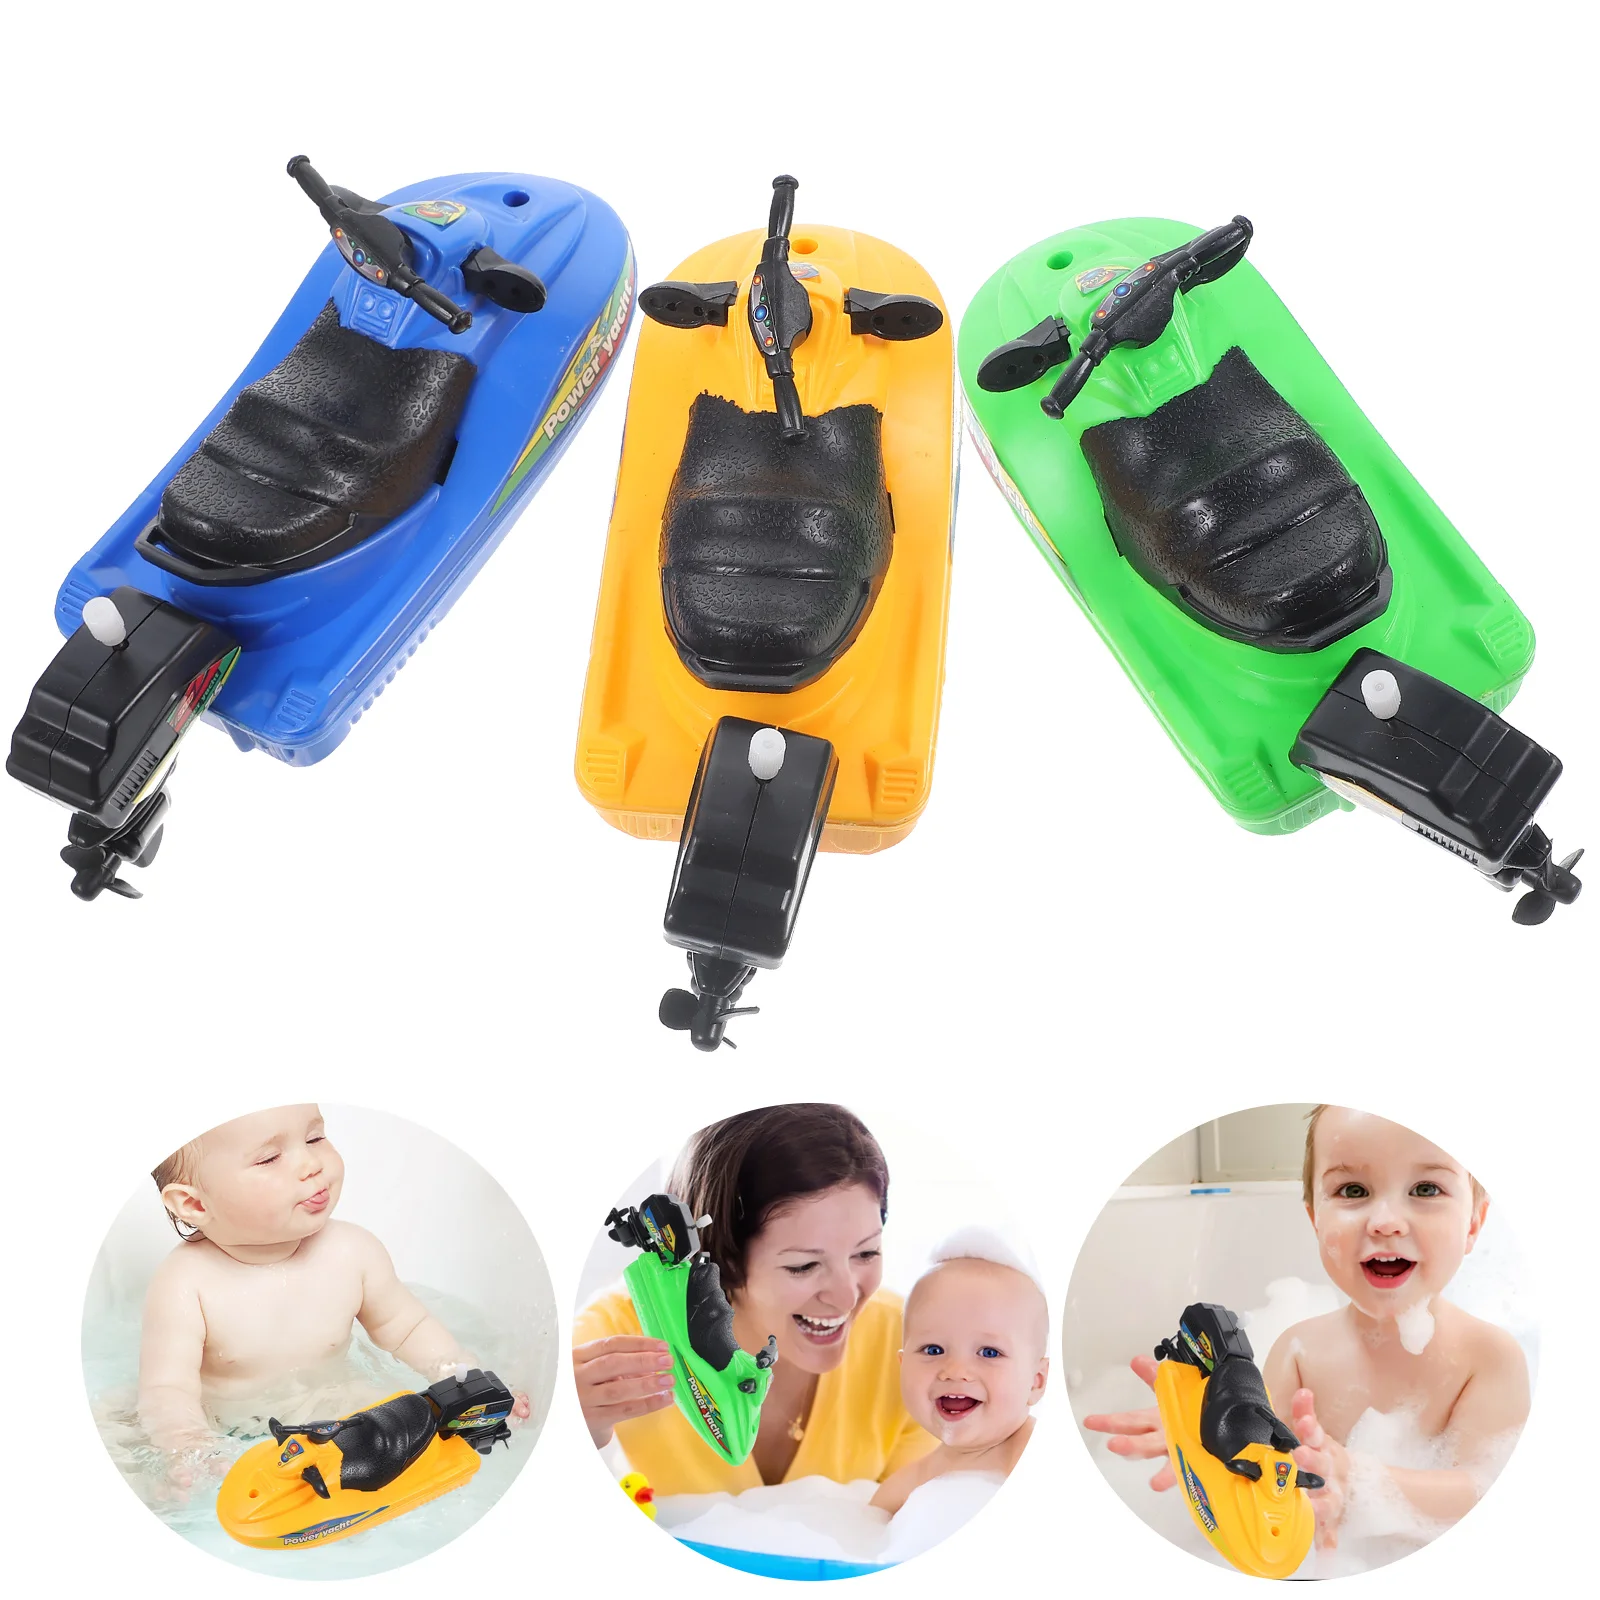 

Резинки для волос 3 шт. пластиковые детские игрушки для ванной моторная лодка для душа парусная лодка заводная моторная лодка бассейн Windup Baby